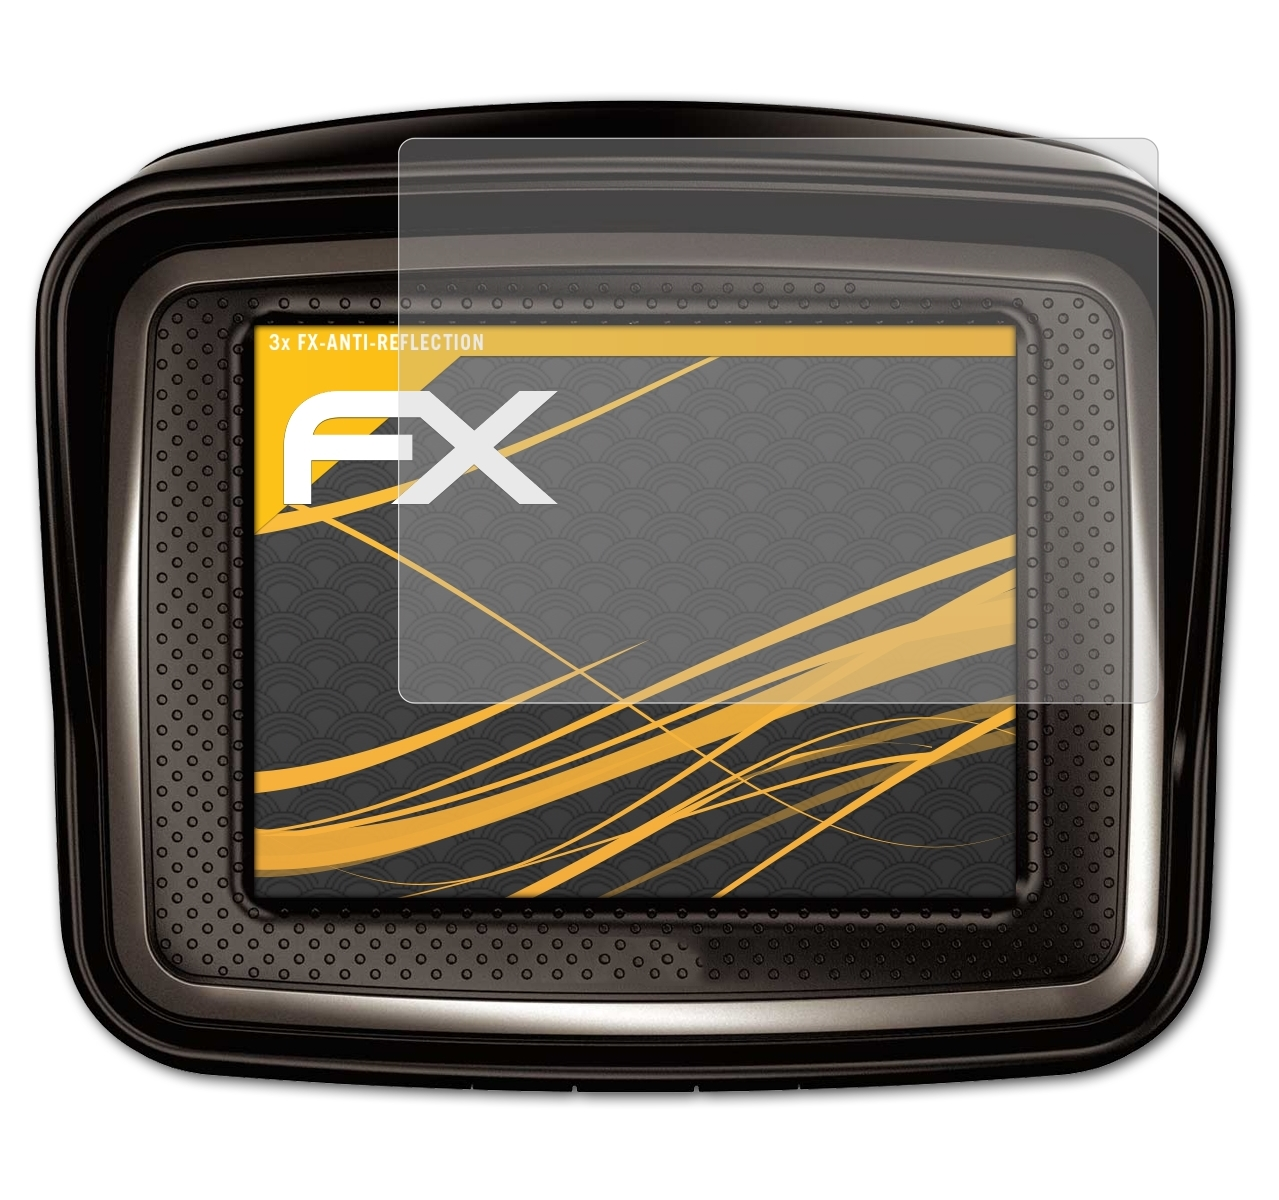 FX-Antireflex (2010)) Rider TomTom 3x ATFOLIX Urban Displayschutz(für